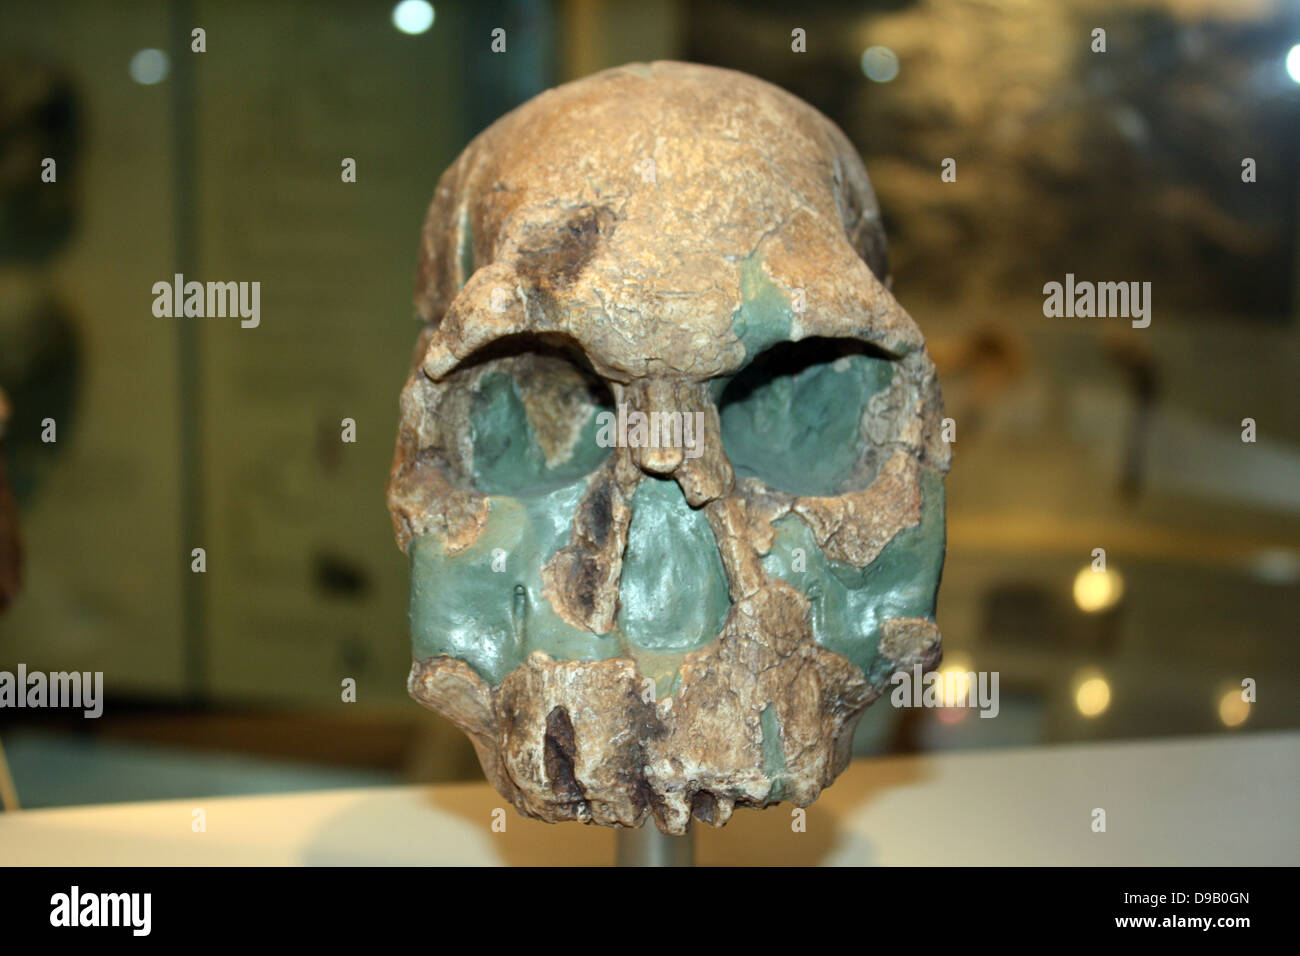 Prima gli esseri umani. Alcuni scienziati ritengono questa è la prima evidenza di esseri umani. Si tratta di circa 1,9 milioni di anni fa e appartiene alla specie Homo rudolfensis (che è a volte inclusi in Homo habilis). Esso ha un cervello più grande ma mantiene la faccia piana e grandi denti del australopithecines. Gli utensili di pietra della stessa età hanno anche scoperto, ma non nello stesso sito come questo fossile. Foto Stock